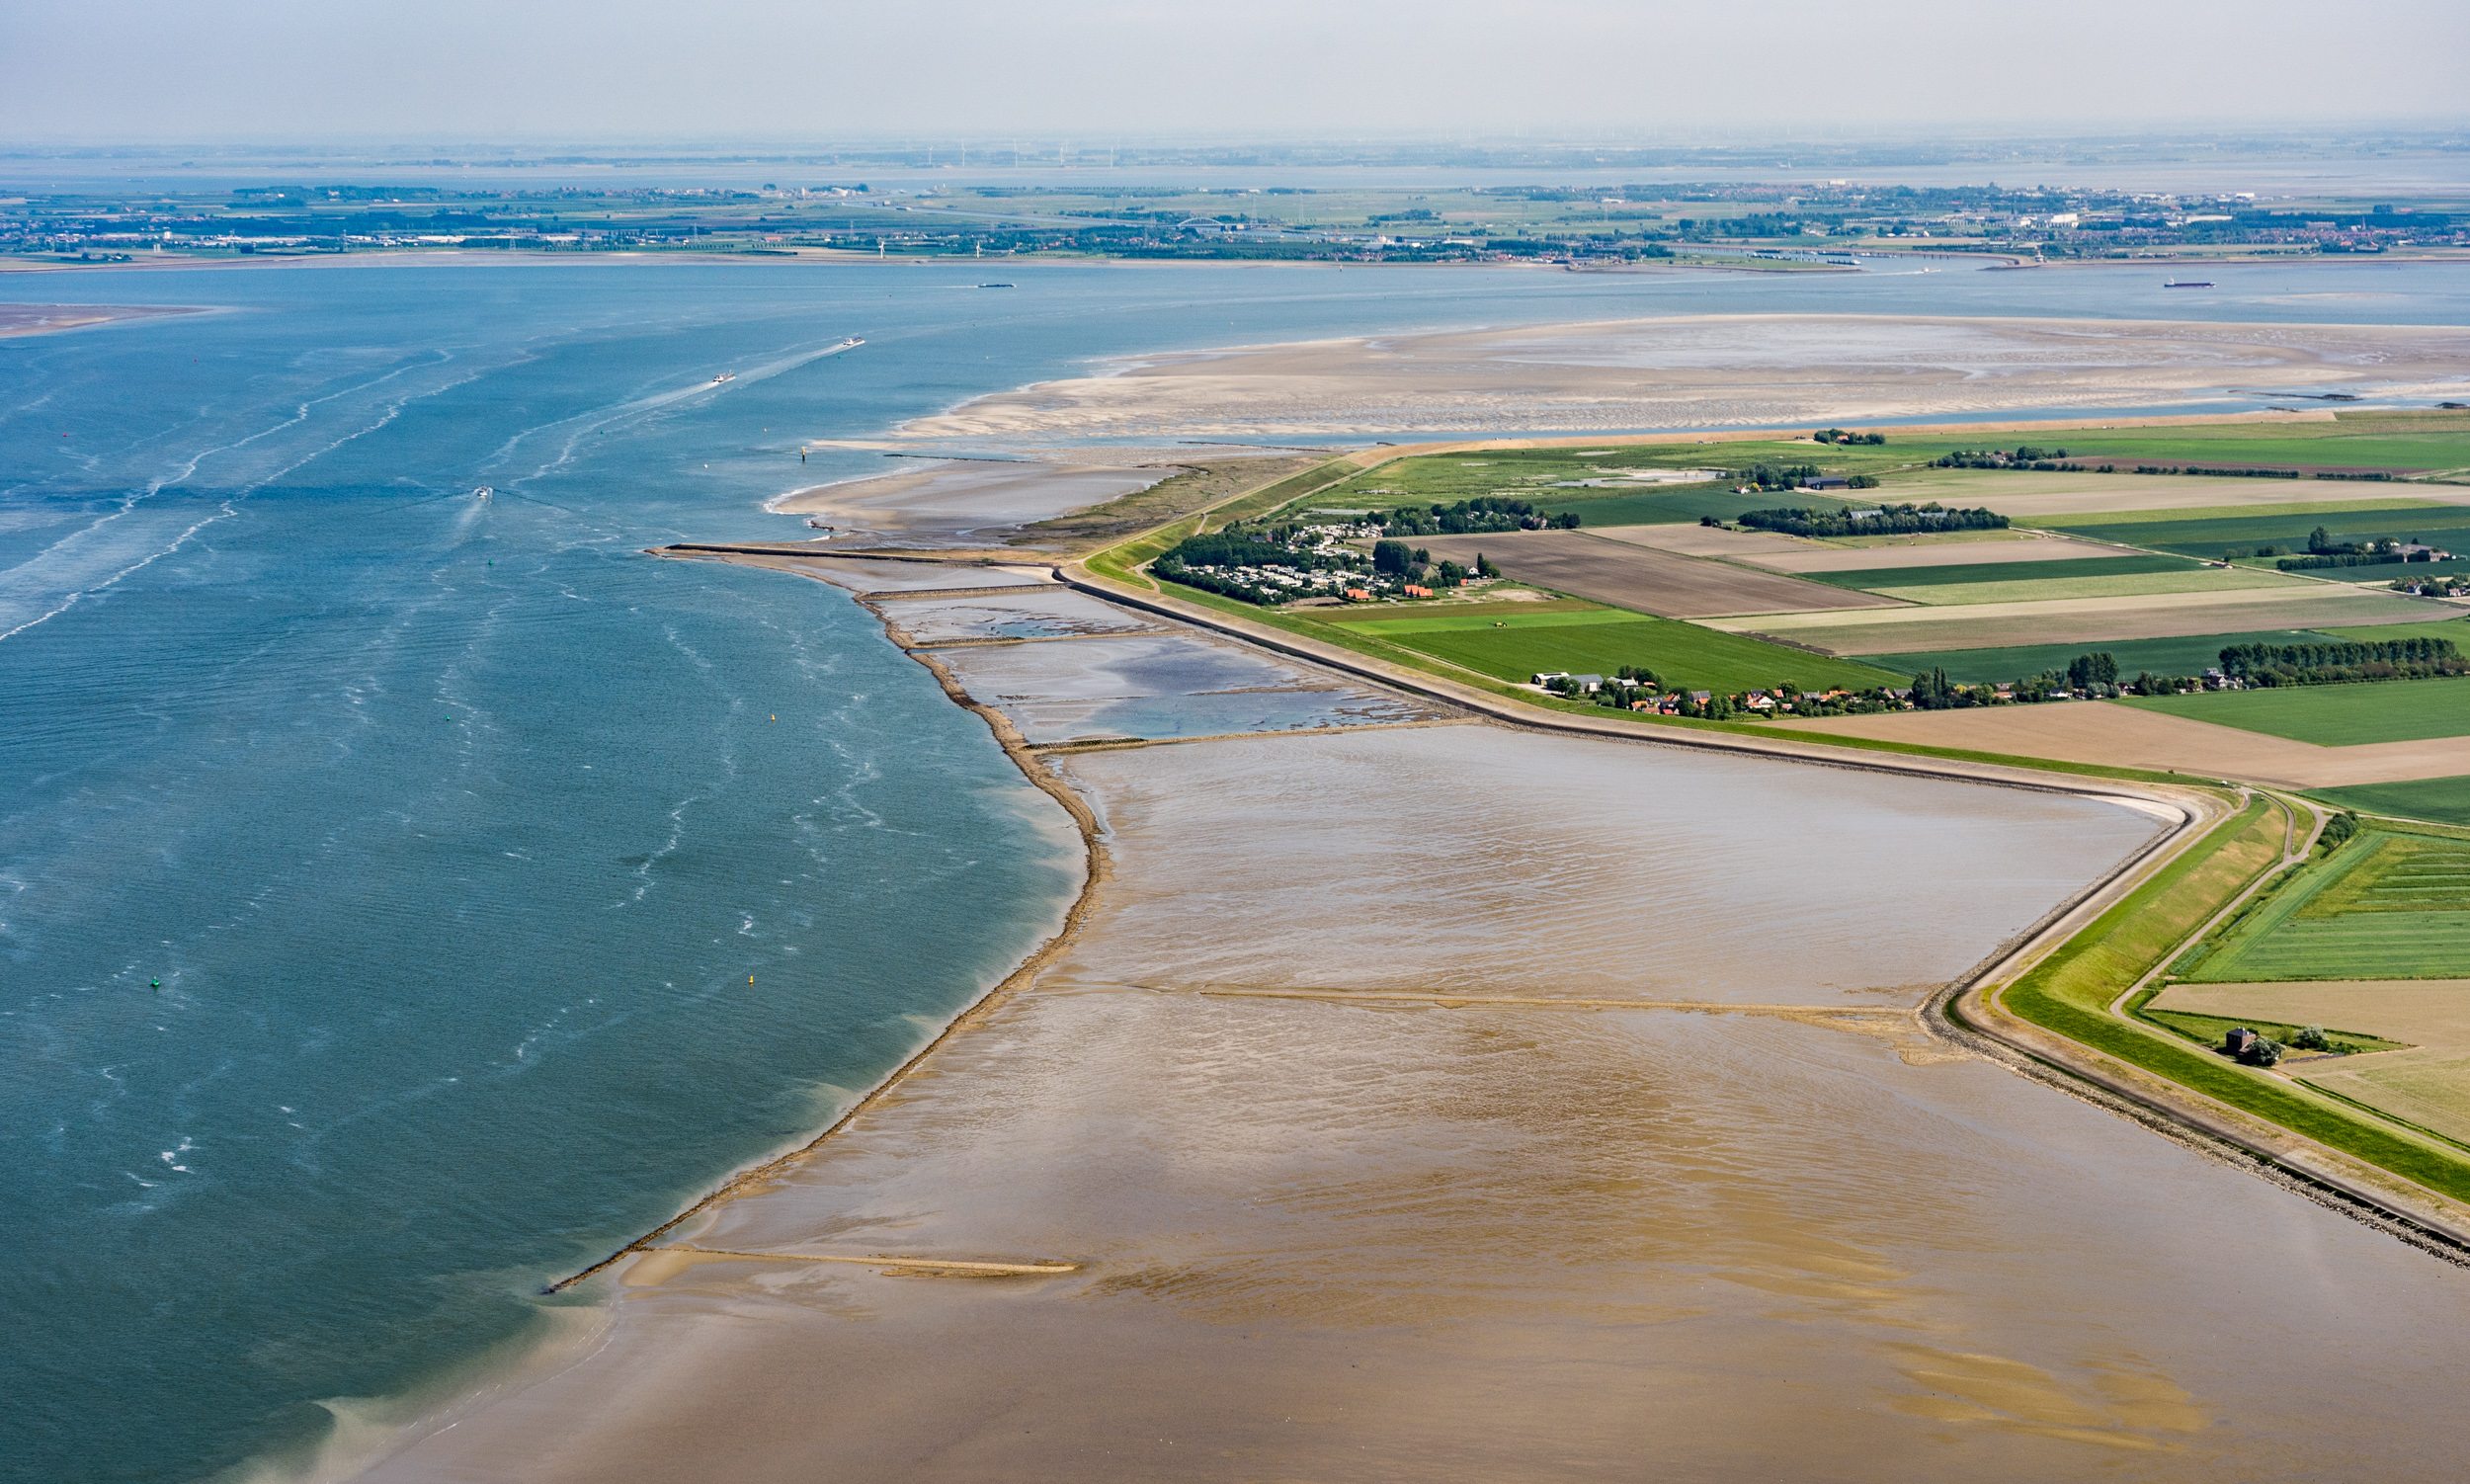 Luchtfoto met water, zand, een kustlijn en platteland.